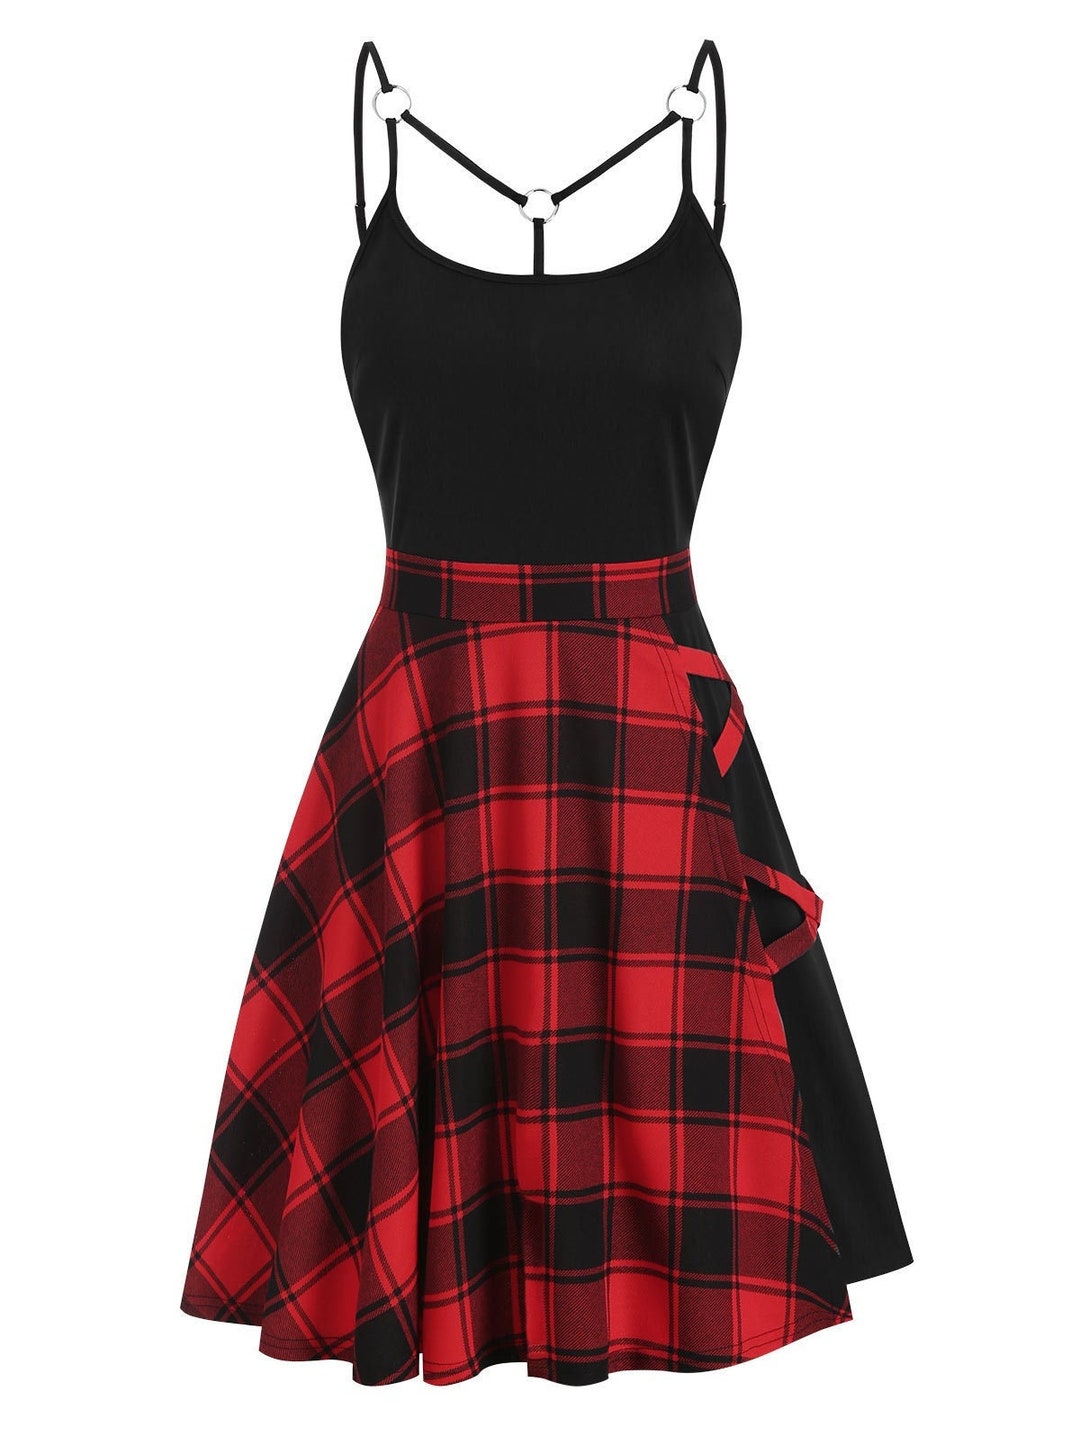 PLAID & BLACK Skater Dress Retro Romantic Red Plaid Dress - Etsy